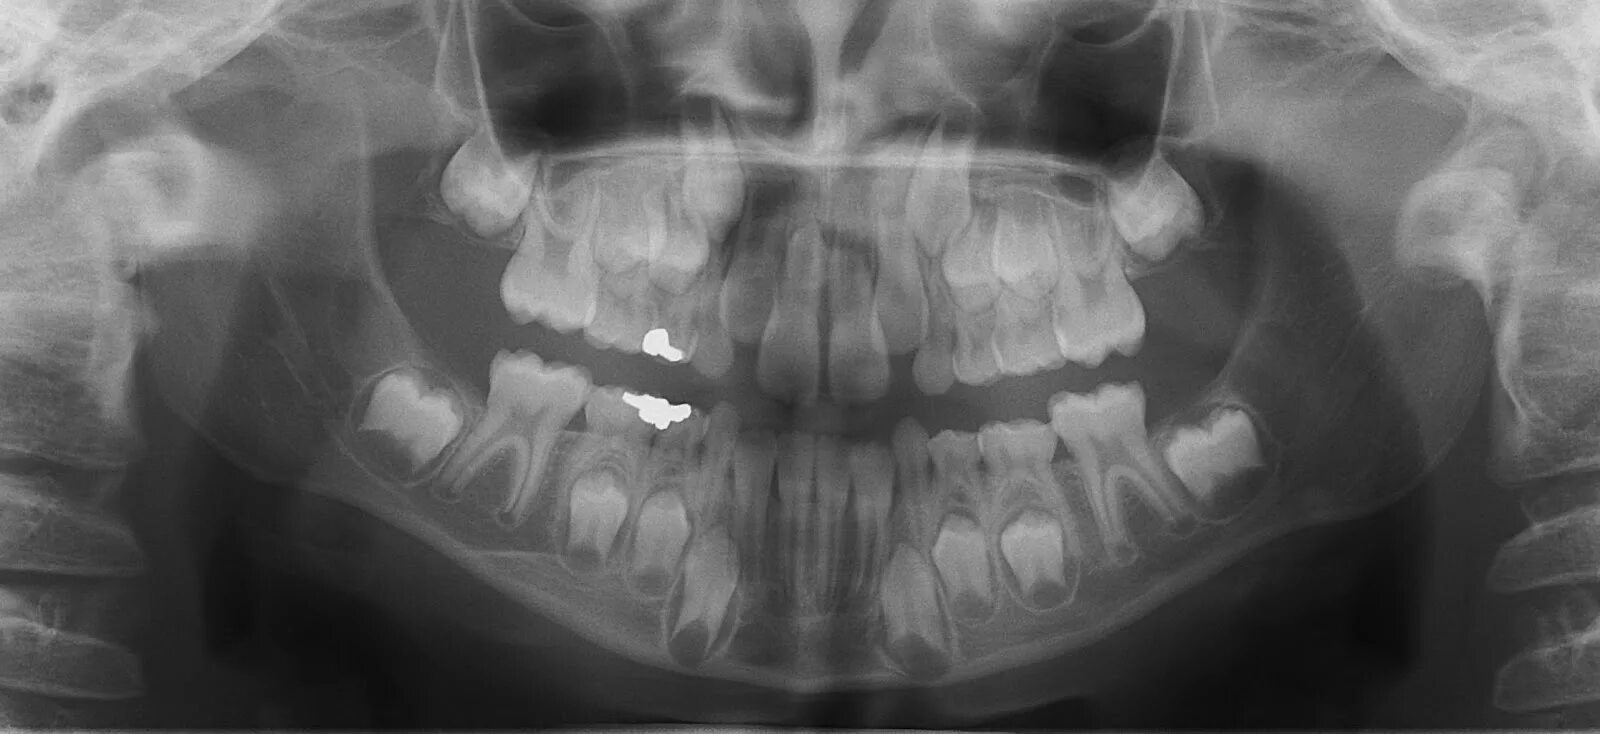 Снимок зубов видное. Зачатки коренных зубов рентген. Снимок молочных зубов рентгеновский.